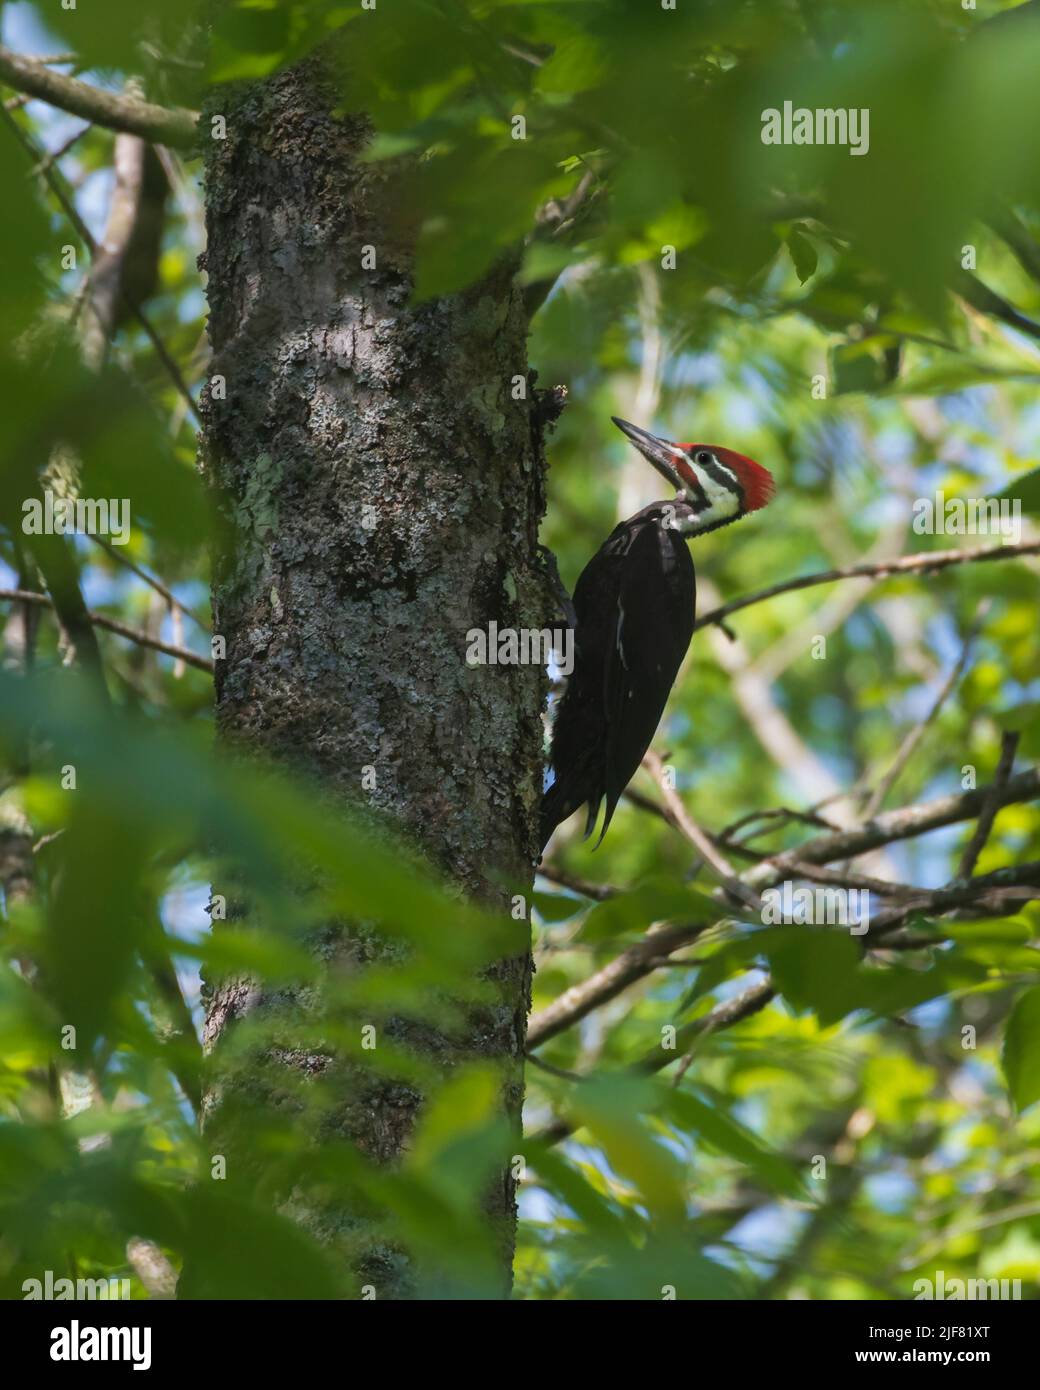 Pájaro carpintero pileatado, Dryocopus pileatus, el pájaro carpintero más grande de Norteamérica, macho indicado por una línea roja de pico a garganta. Foto de stock